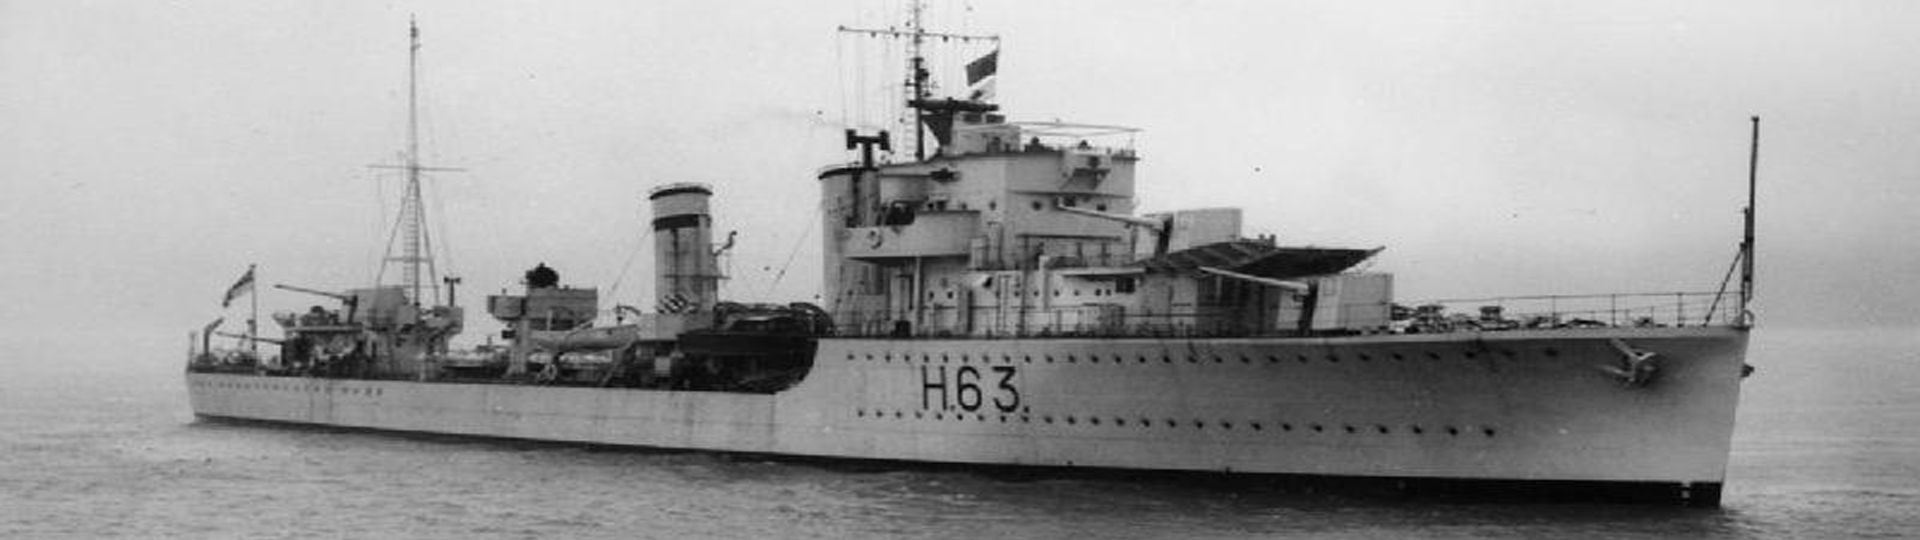 HMS Gipsy in June 1936